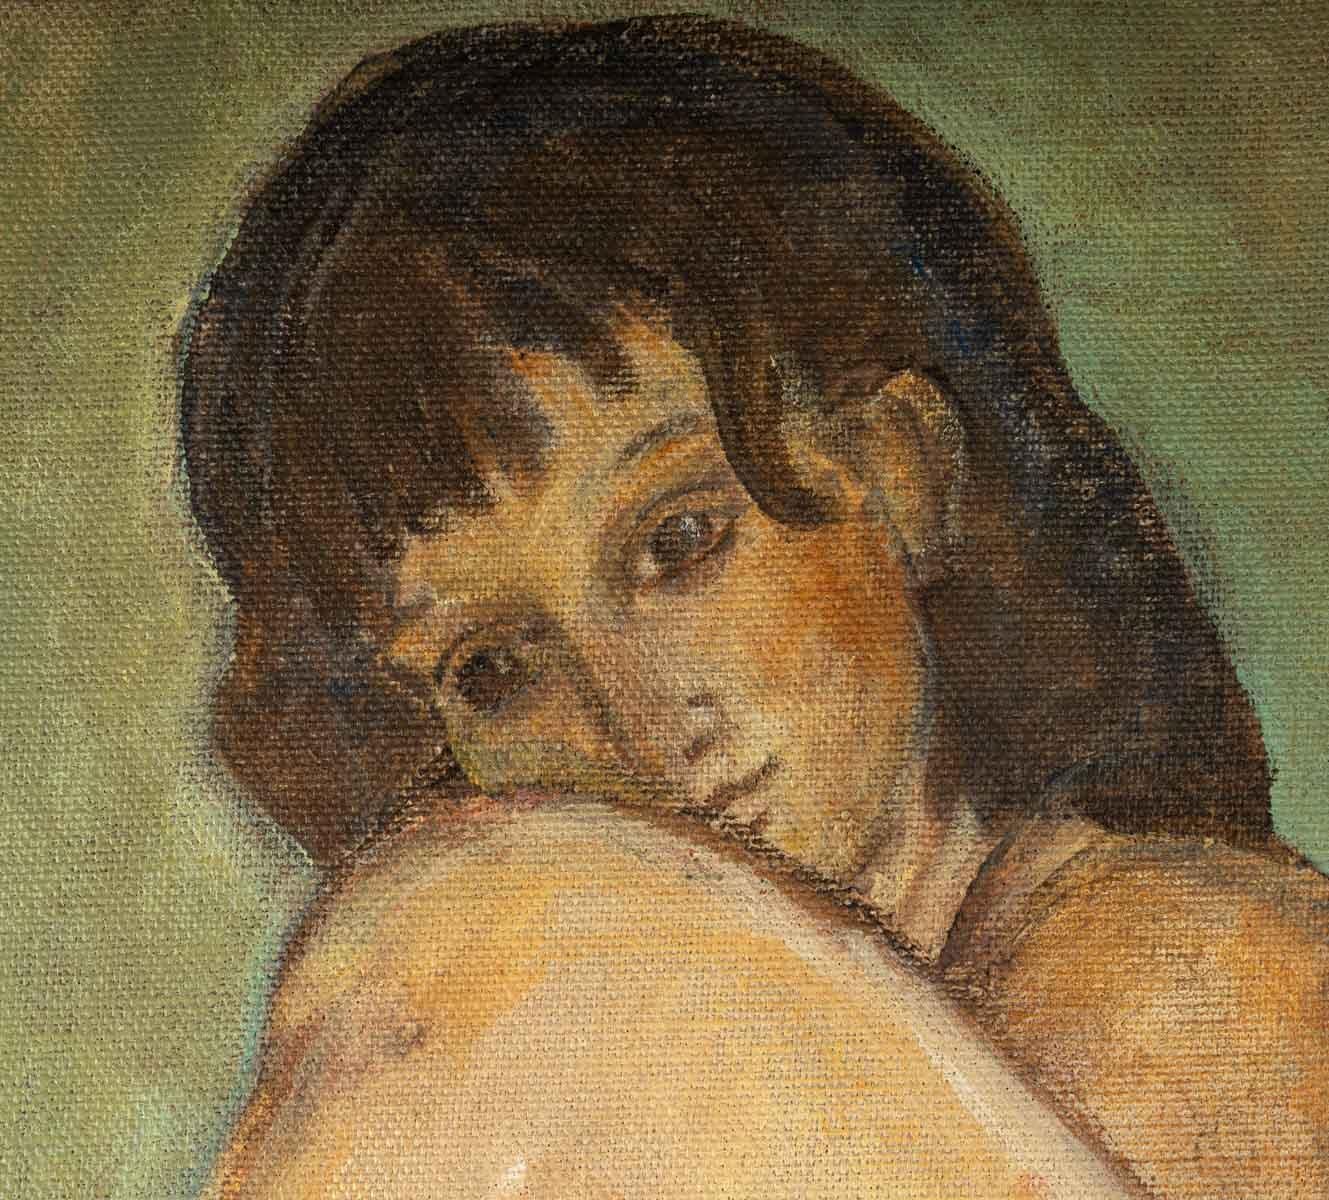 Femme nue, huile sur toile, 20e siècle.
Evelyne Luez, Ecole de Paris 
Mesures : H : 81, L : 65 cm, P : 2 cm.